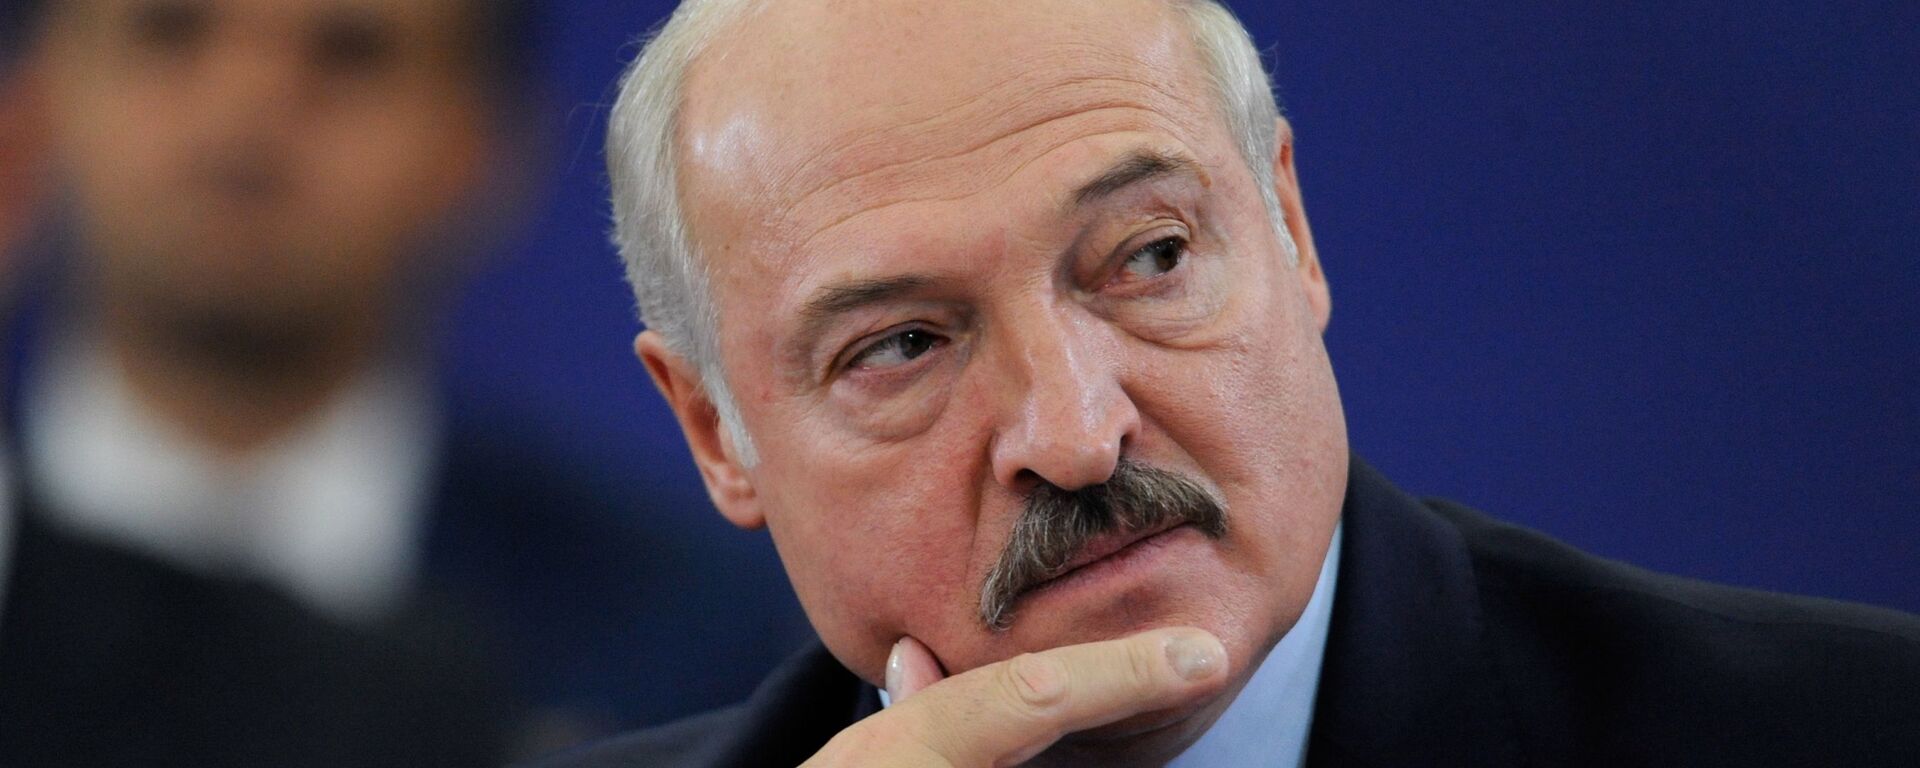 Alexandr Lukashenko, el presidente de Bielorrusia - Sputnik Mundo, 1920, 18.10.2021